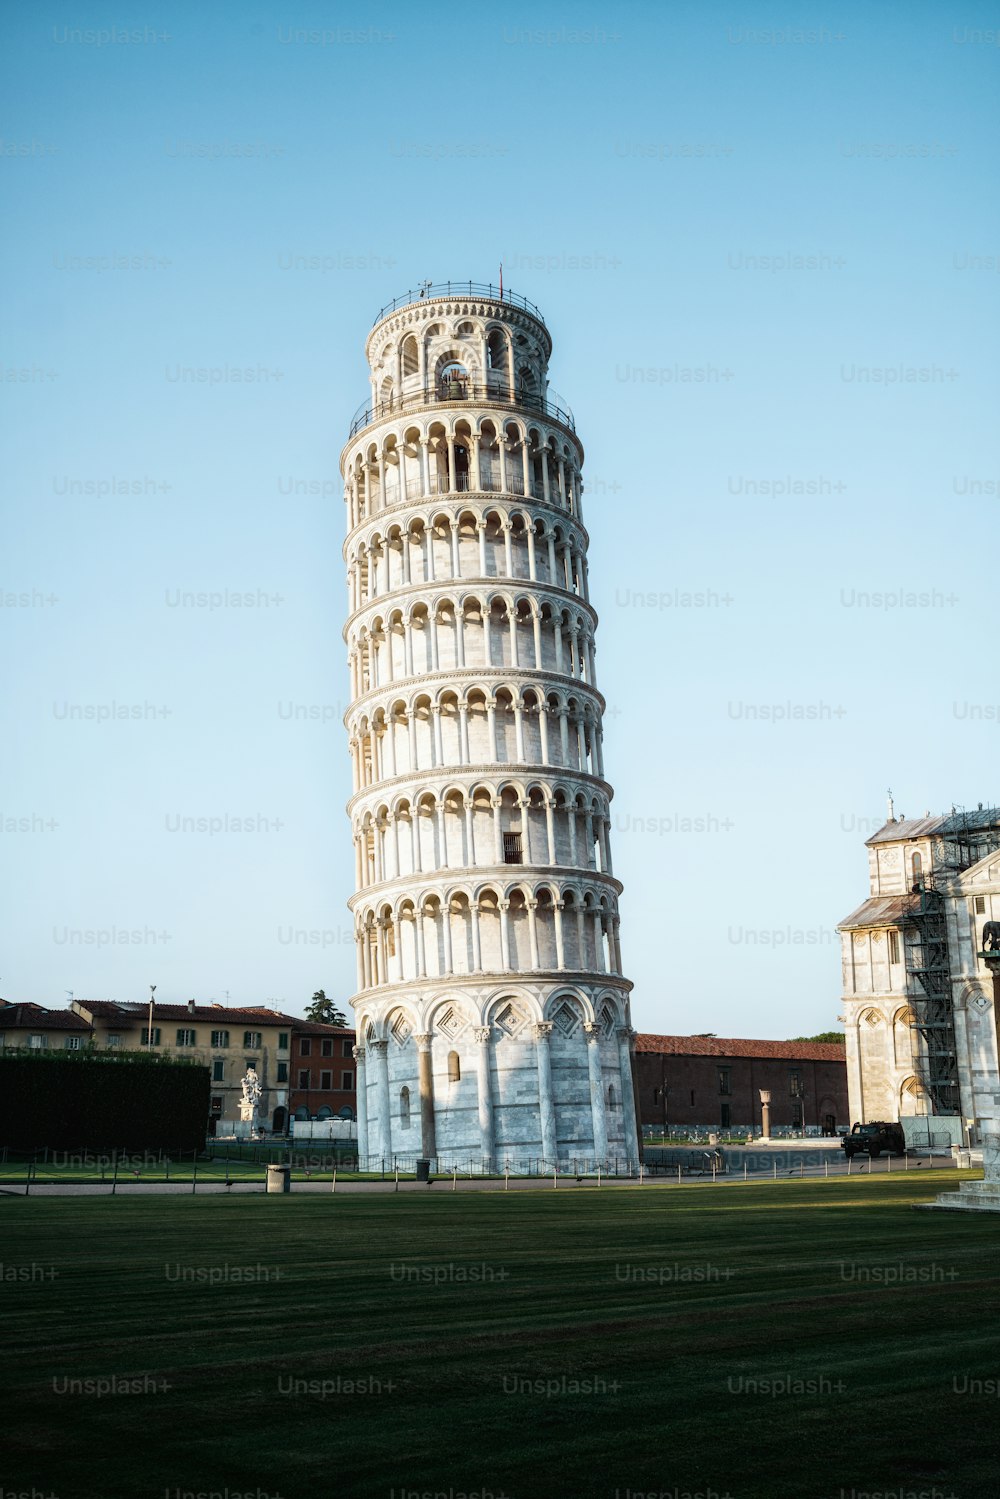 Torre inclinada de Pisa en Pisa, Italia - Torre inclinada de Pisa conocida en todo el mundo por su inclinación involuntaria y su famoso destino de viaje de Italia. Está situado cerca de la Catedral de Pisa.